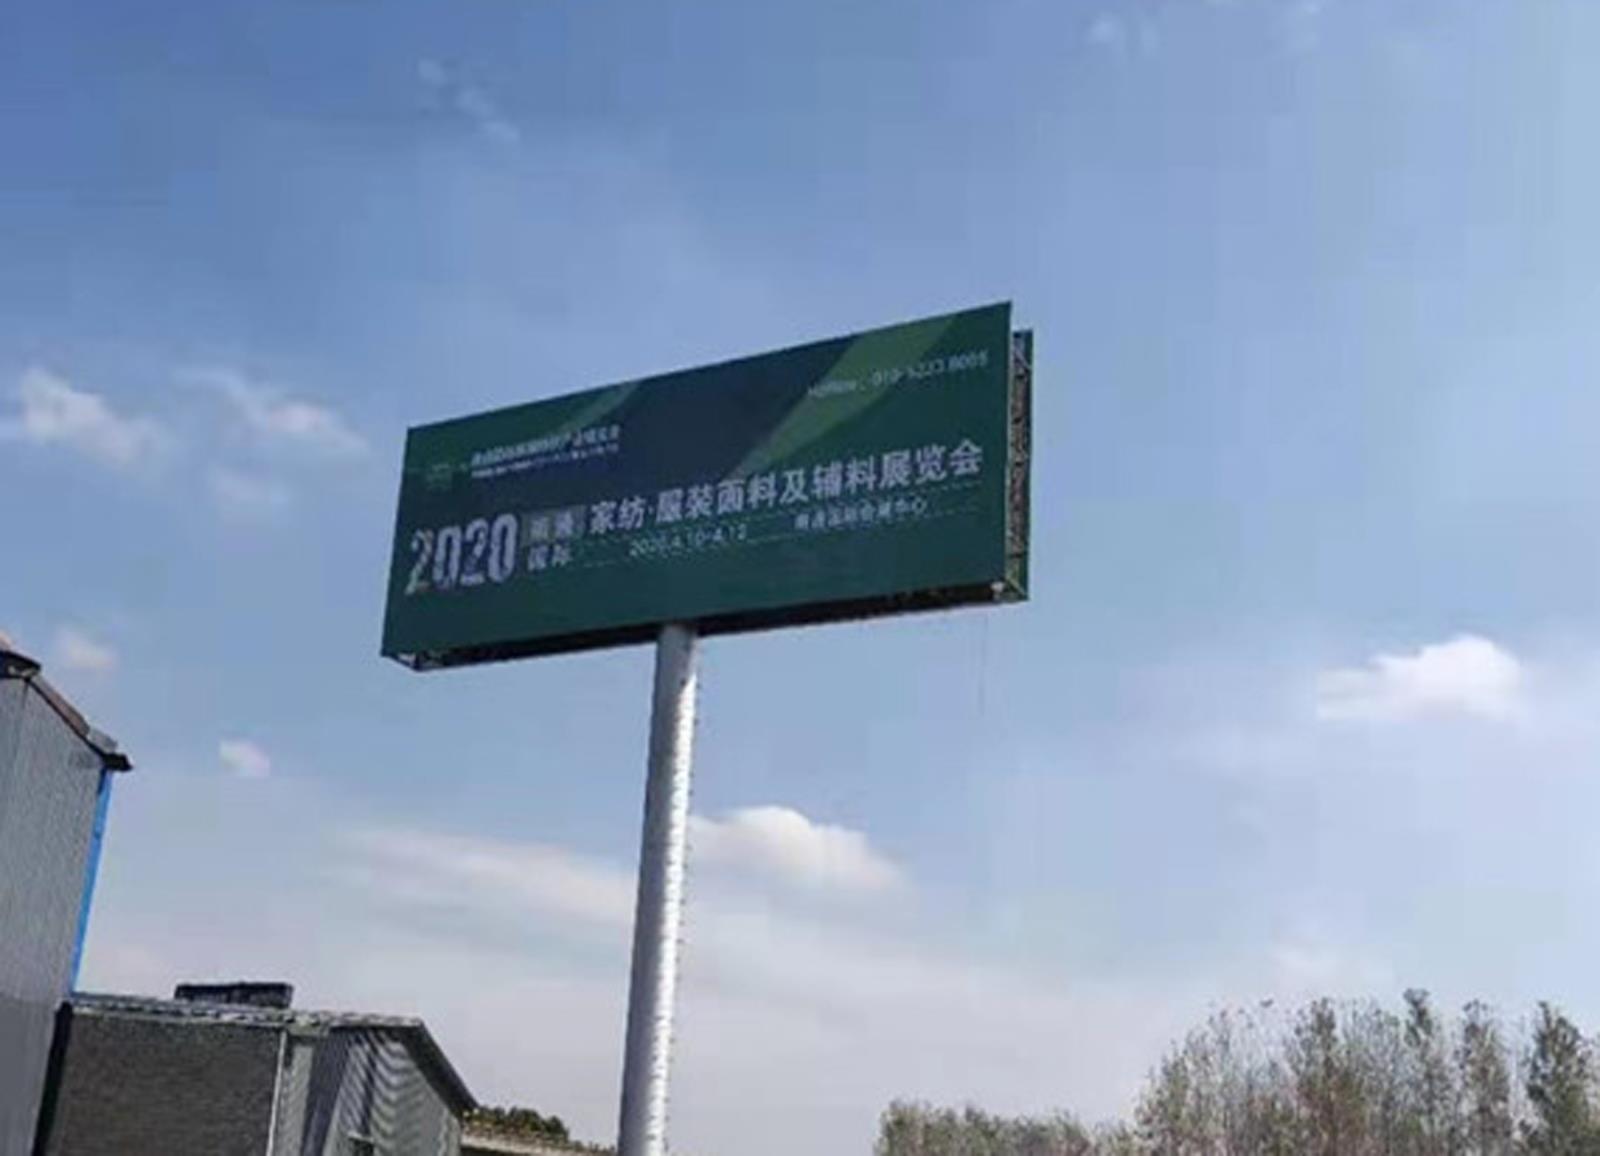 2020南通国际高端纺织产业博览会户外广告闪耀江苏大地